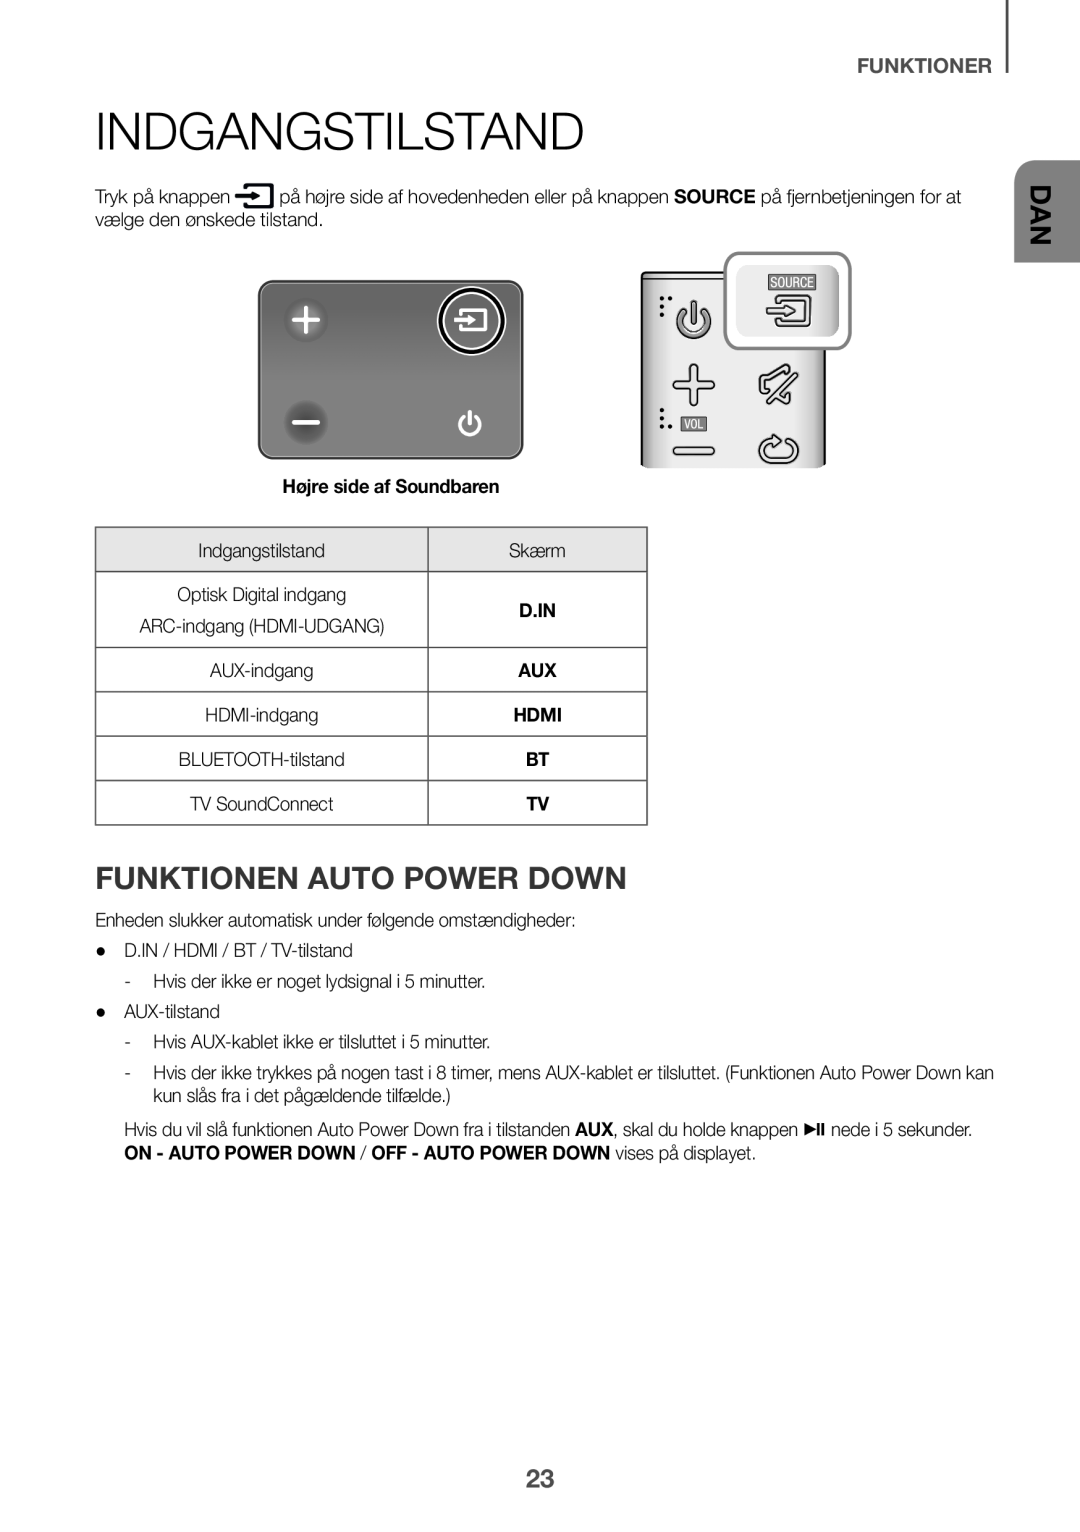 Samsung HW-K651/ZF, HW-K651/EN manual Indgangstilstand, Funktionen Auto Power Down, Funktioner, Højre side af Soundbaren 